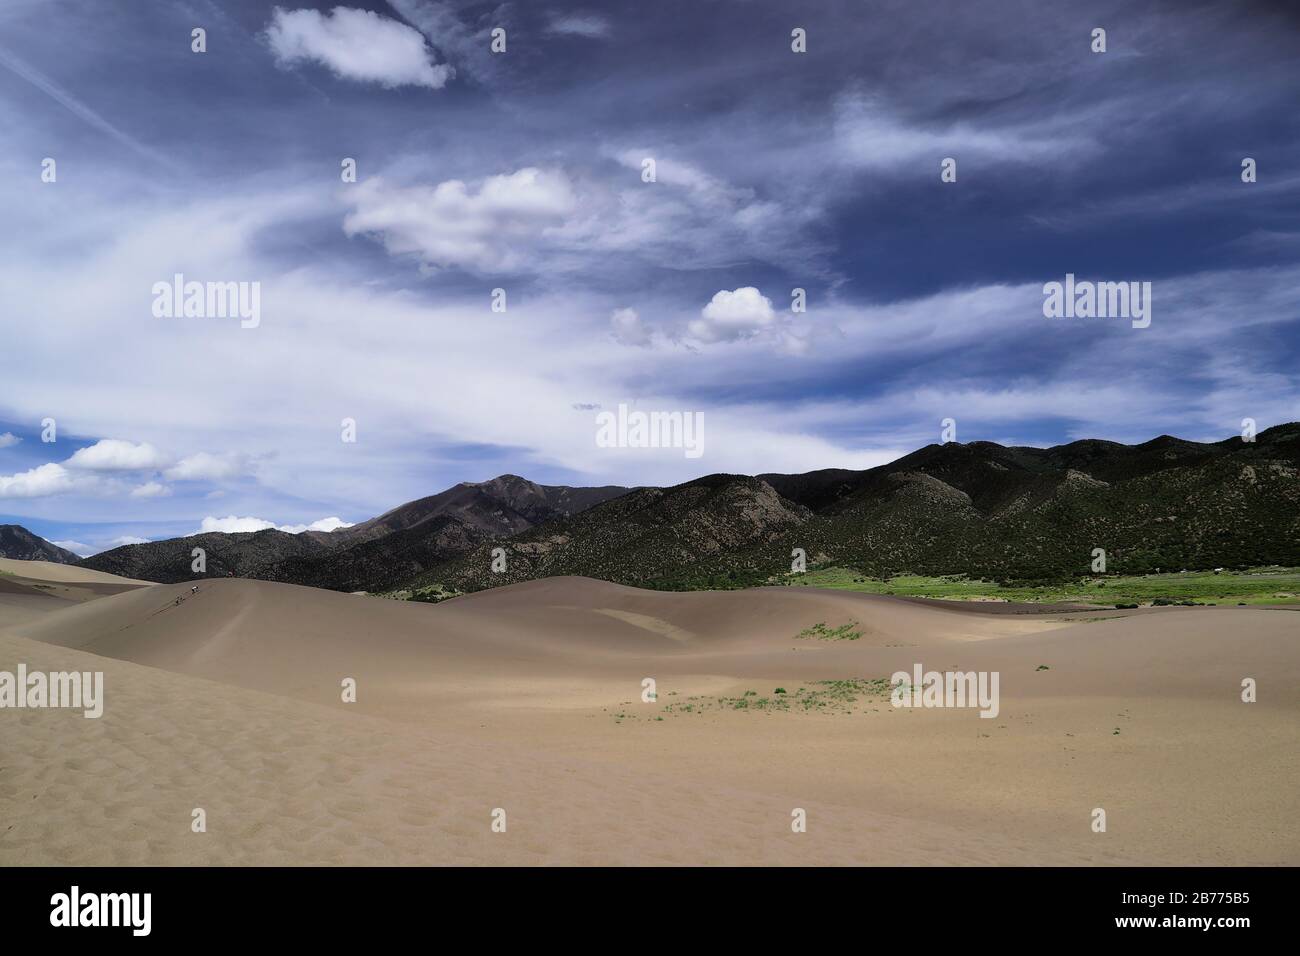 Landschaftsbild der Great Sand Dunes National Park Preserve in Colorado am östlichen Rand des San Luis Valley. Höchste Sanddünen Nordamerikas Stockfoto